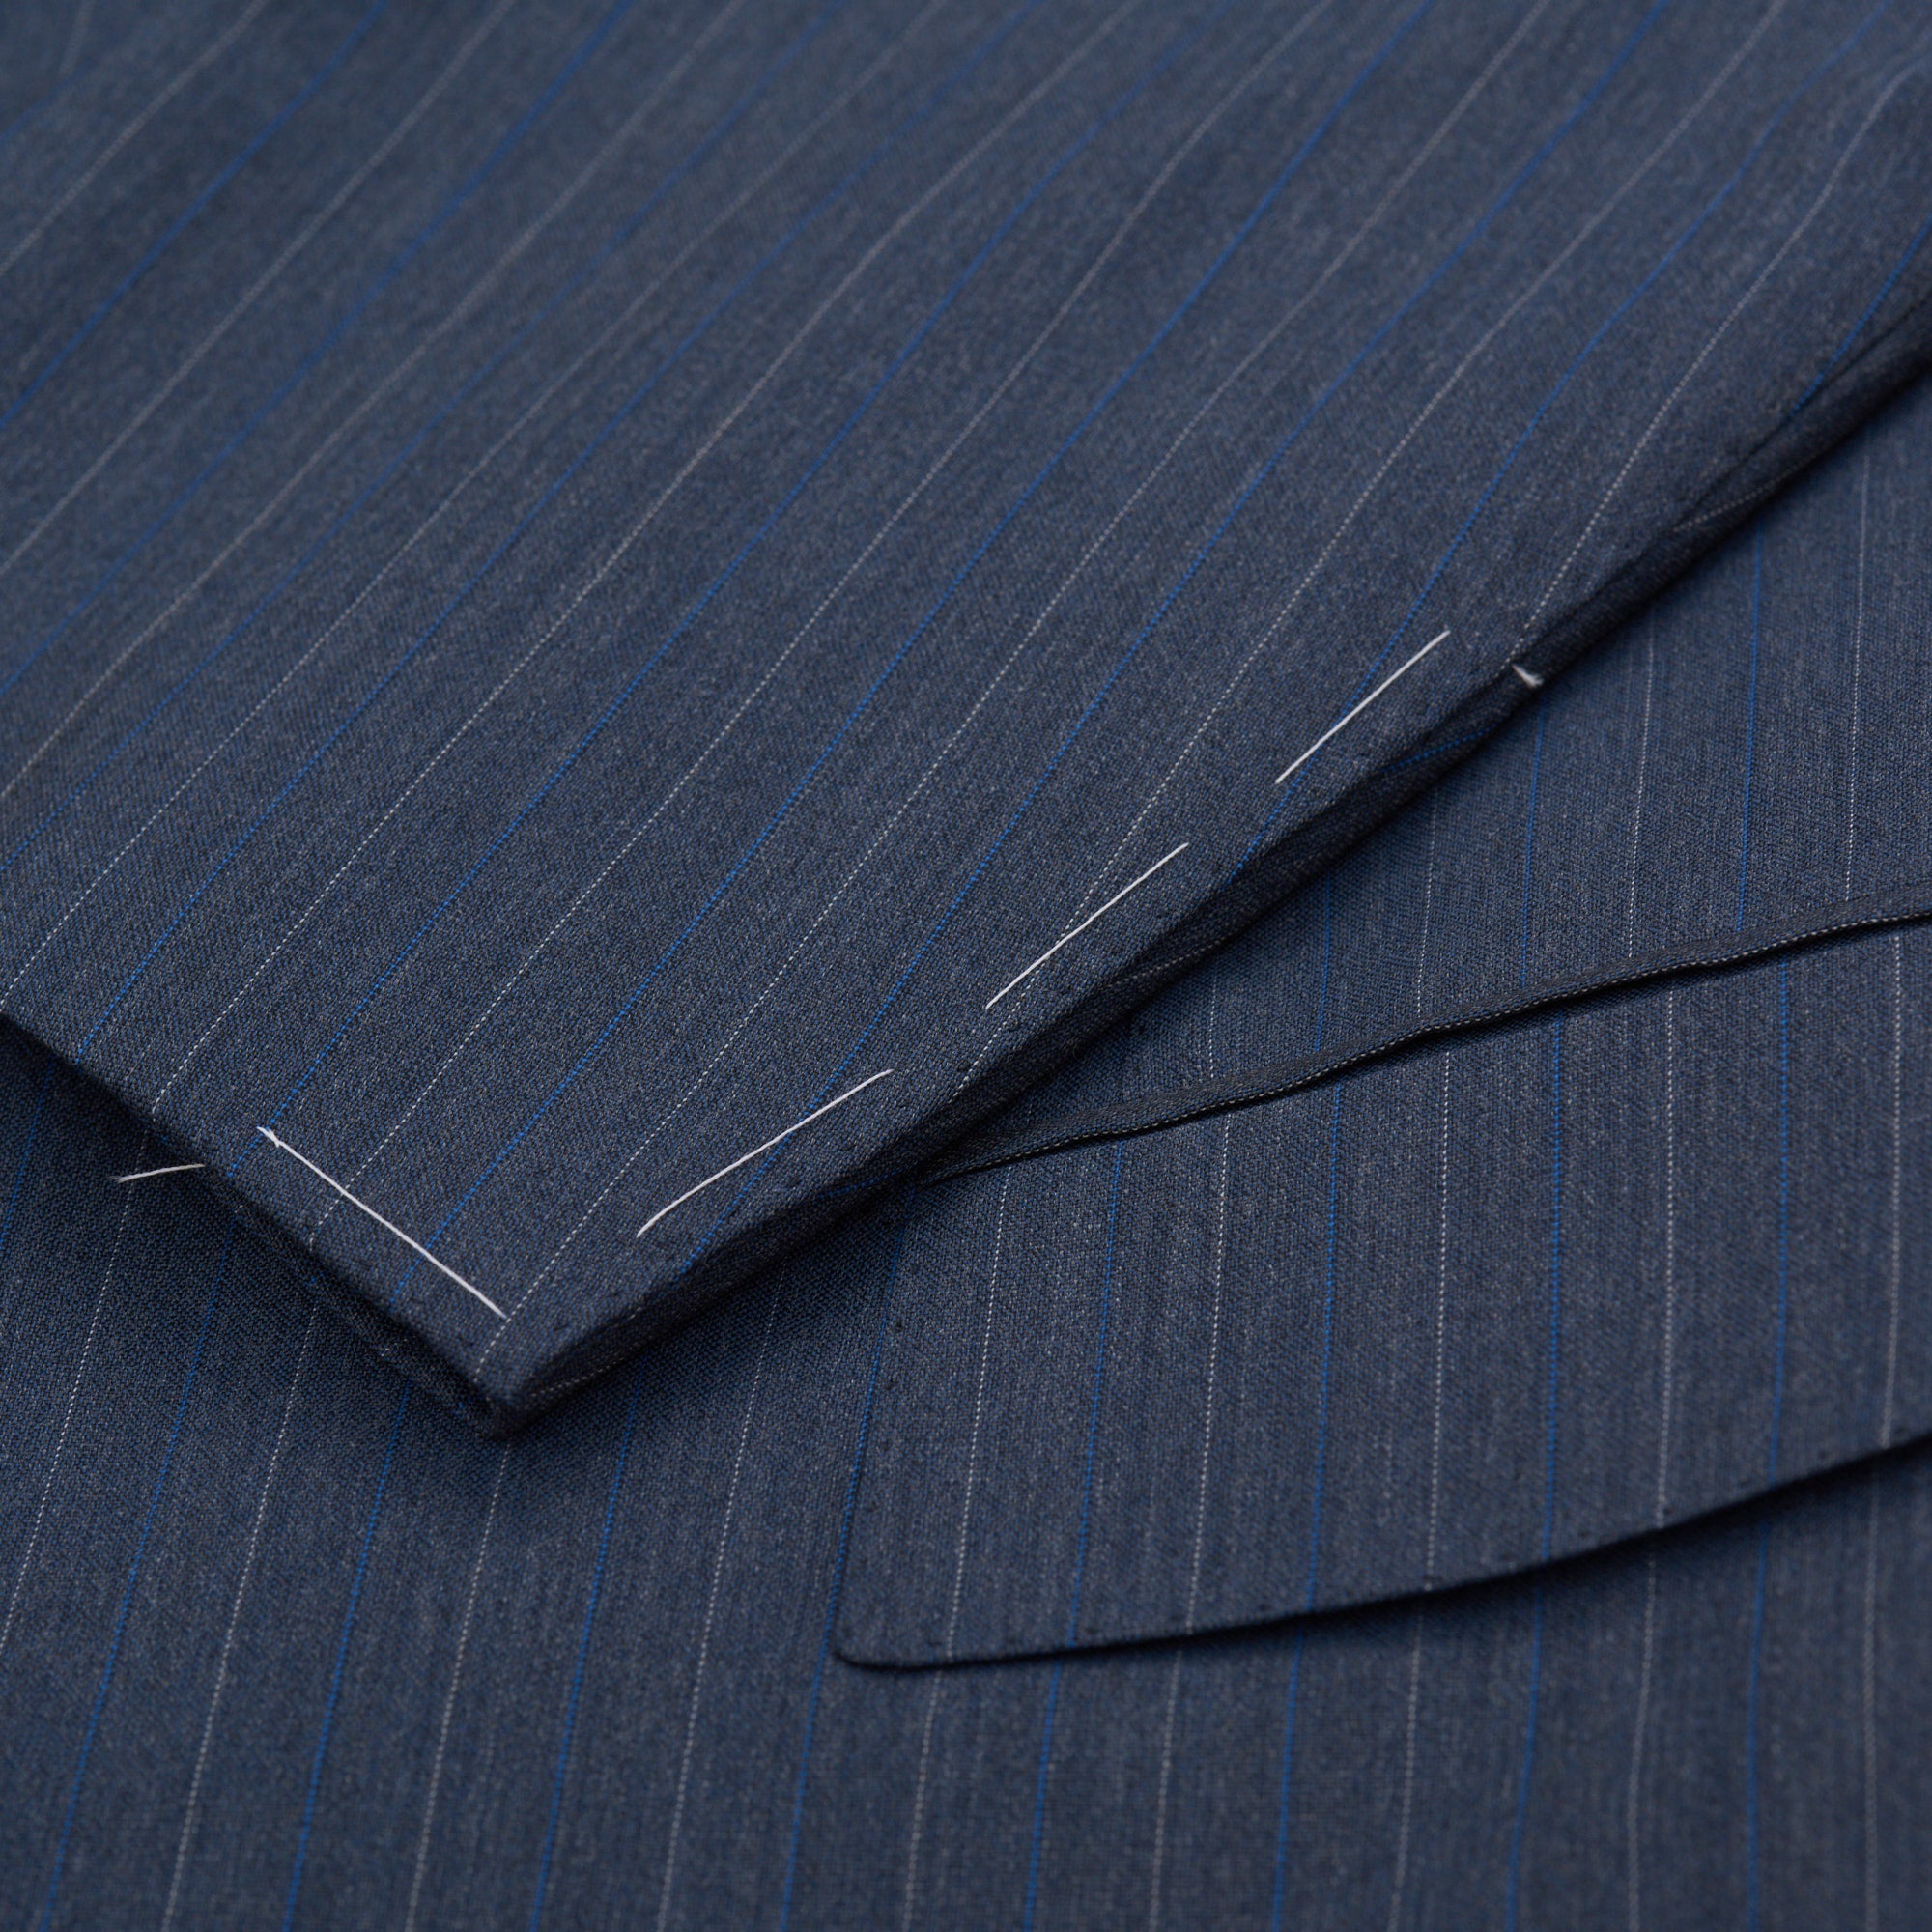 CESARE ATTOLINI Napoli Handmade Blue Striped Wool Super 120's Suit 52 NEW US 42 CESARE ATTOLINI